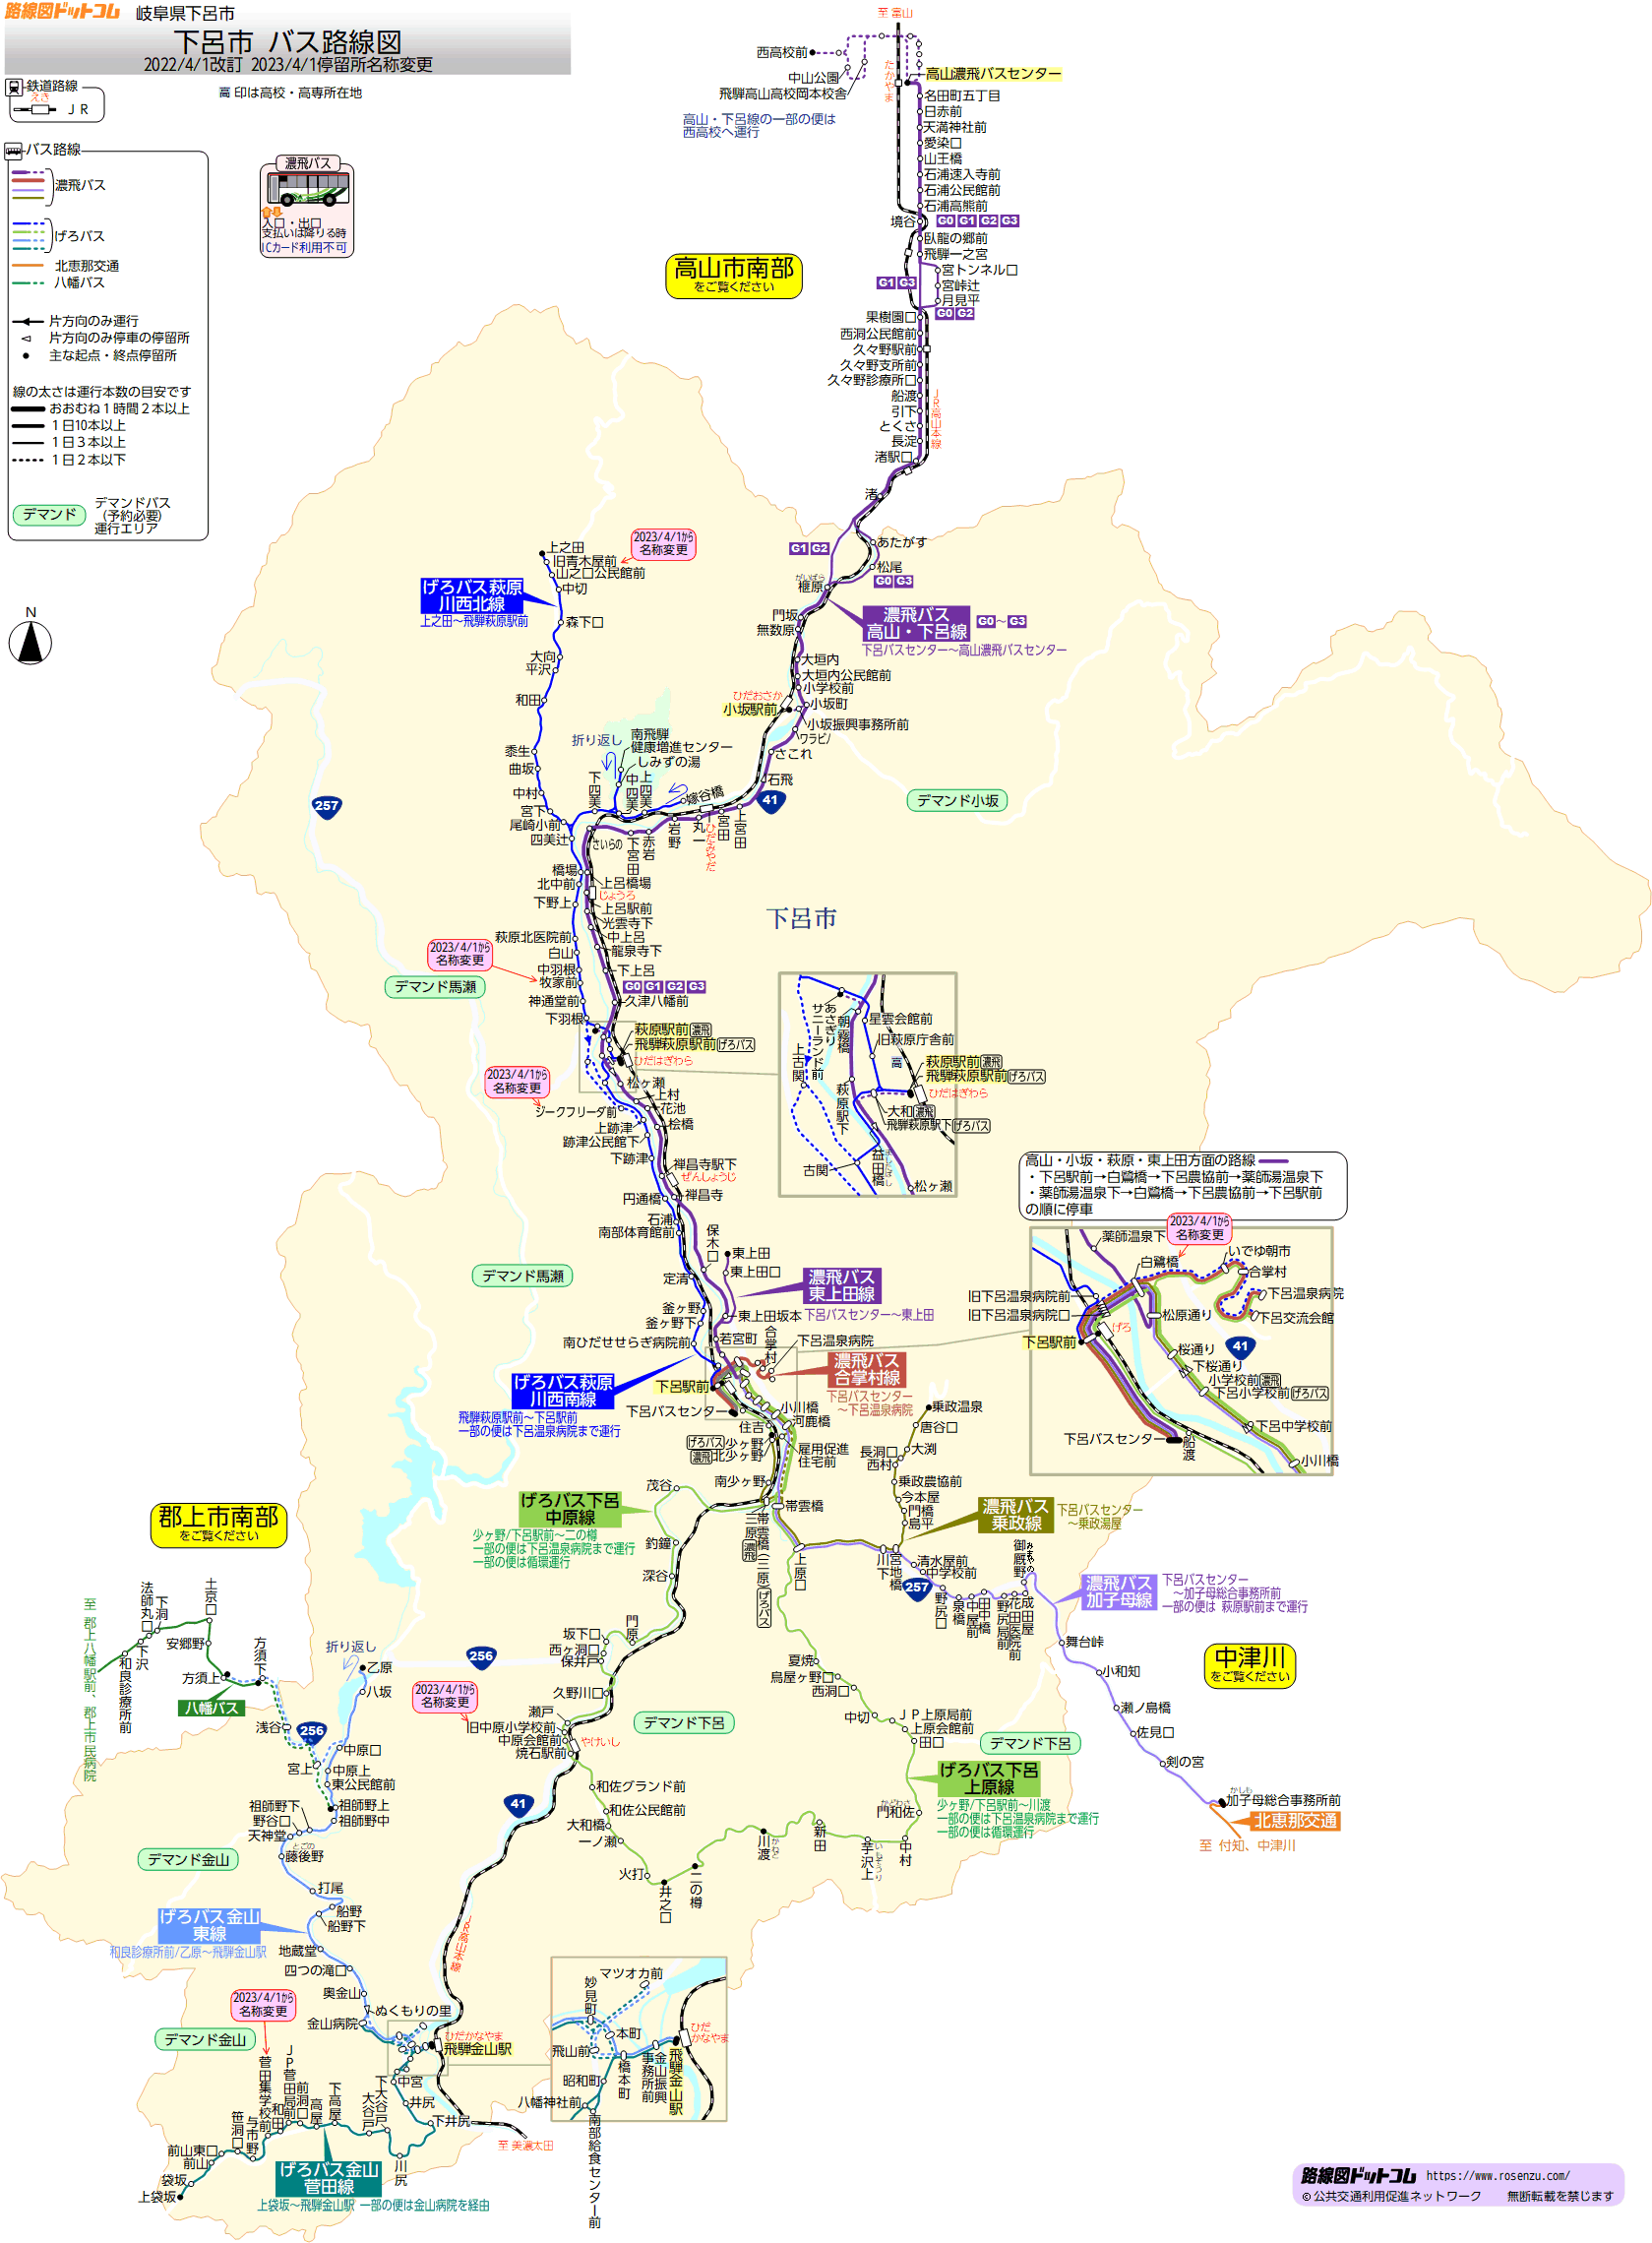 下呂市バス路線図